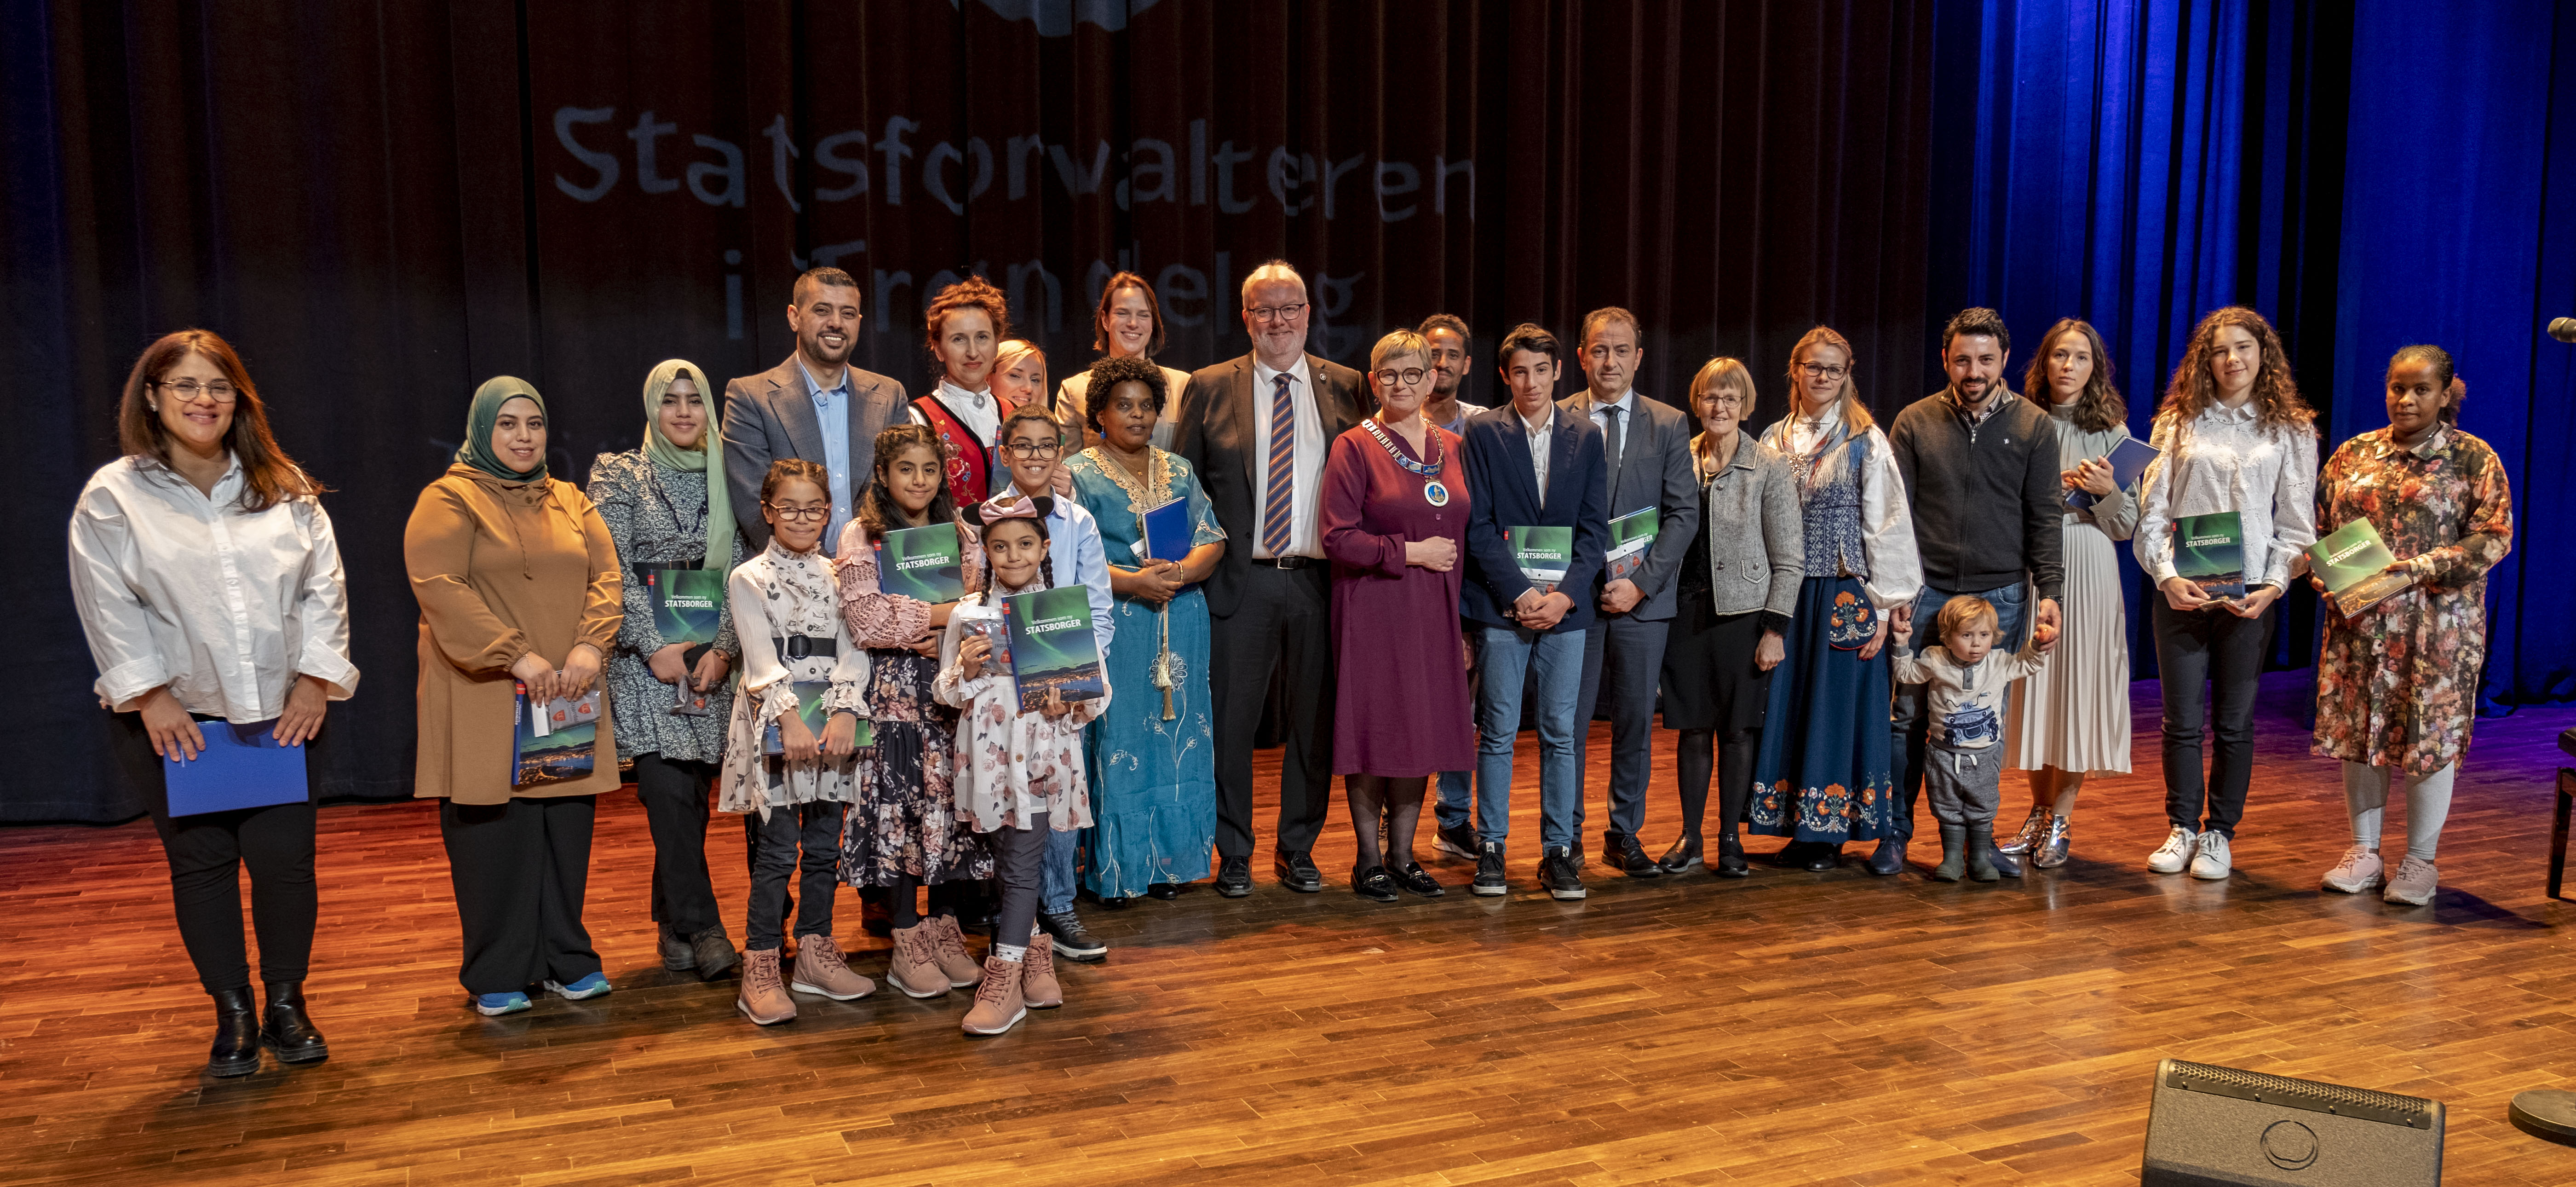 Statsborgerseremoni-Stjørdal-2022_Kommunebilde_Stjørdal.jpg